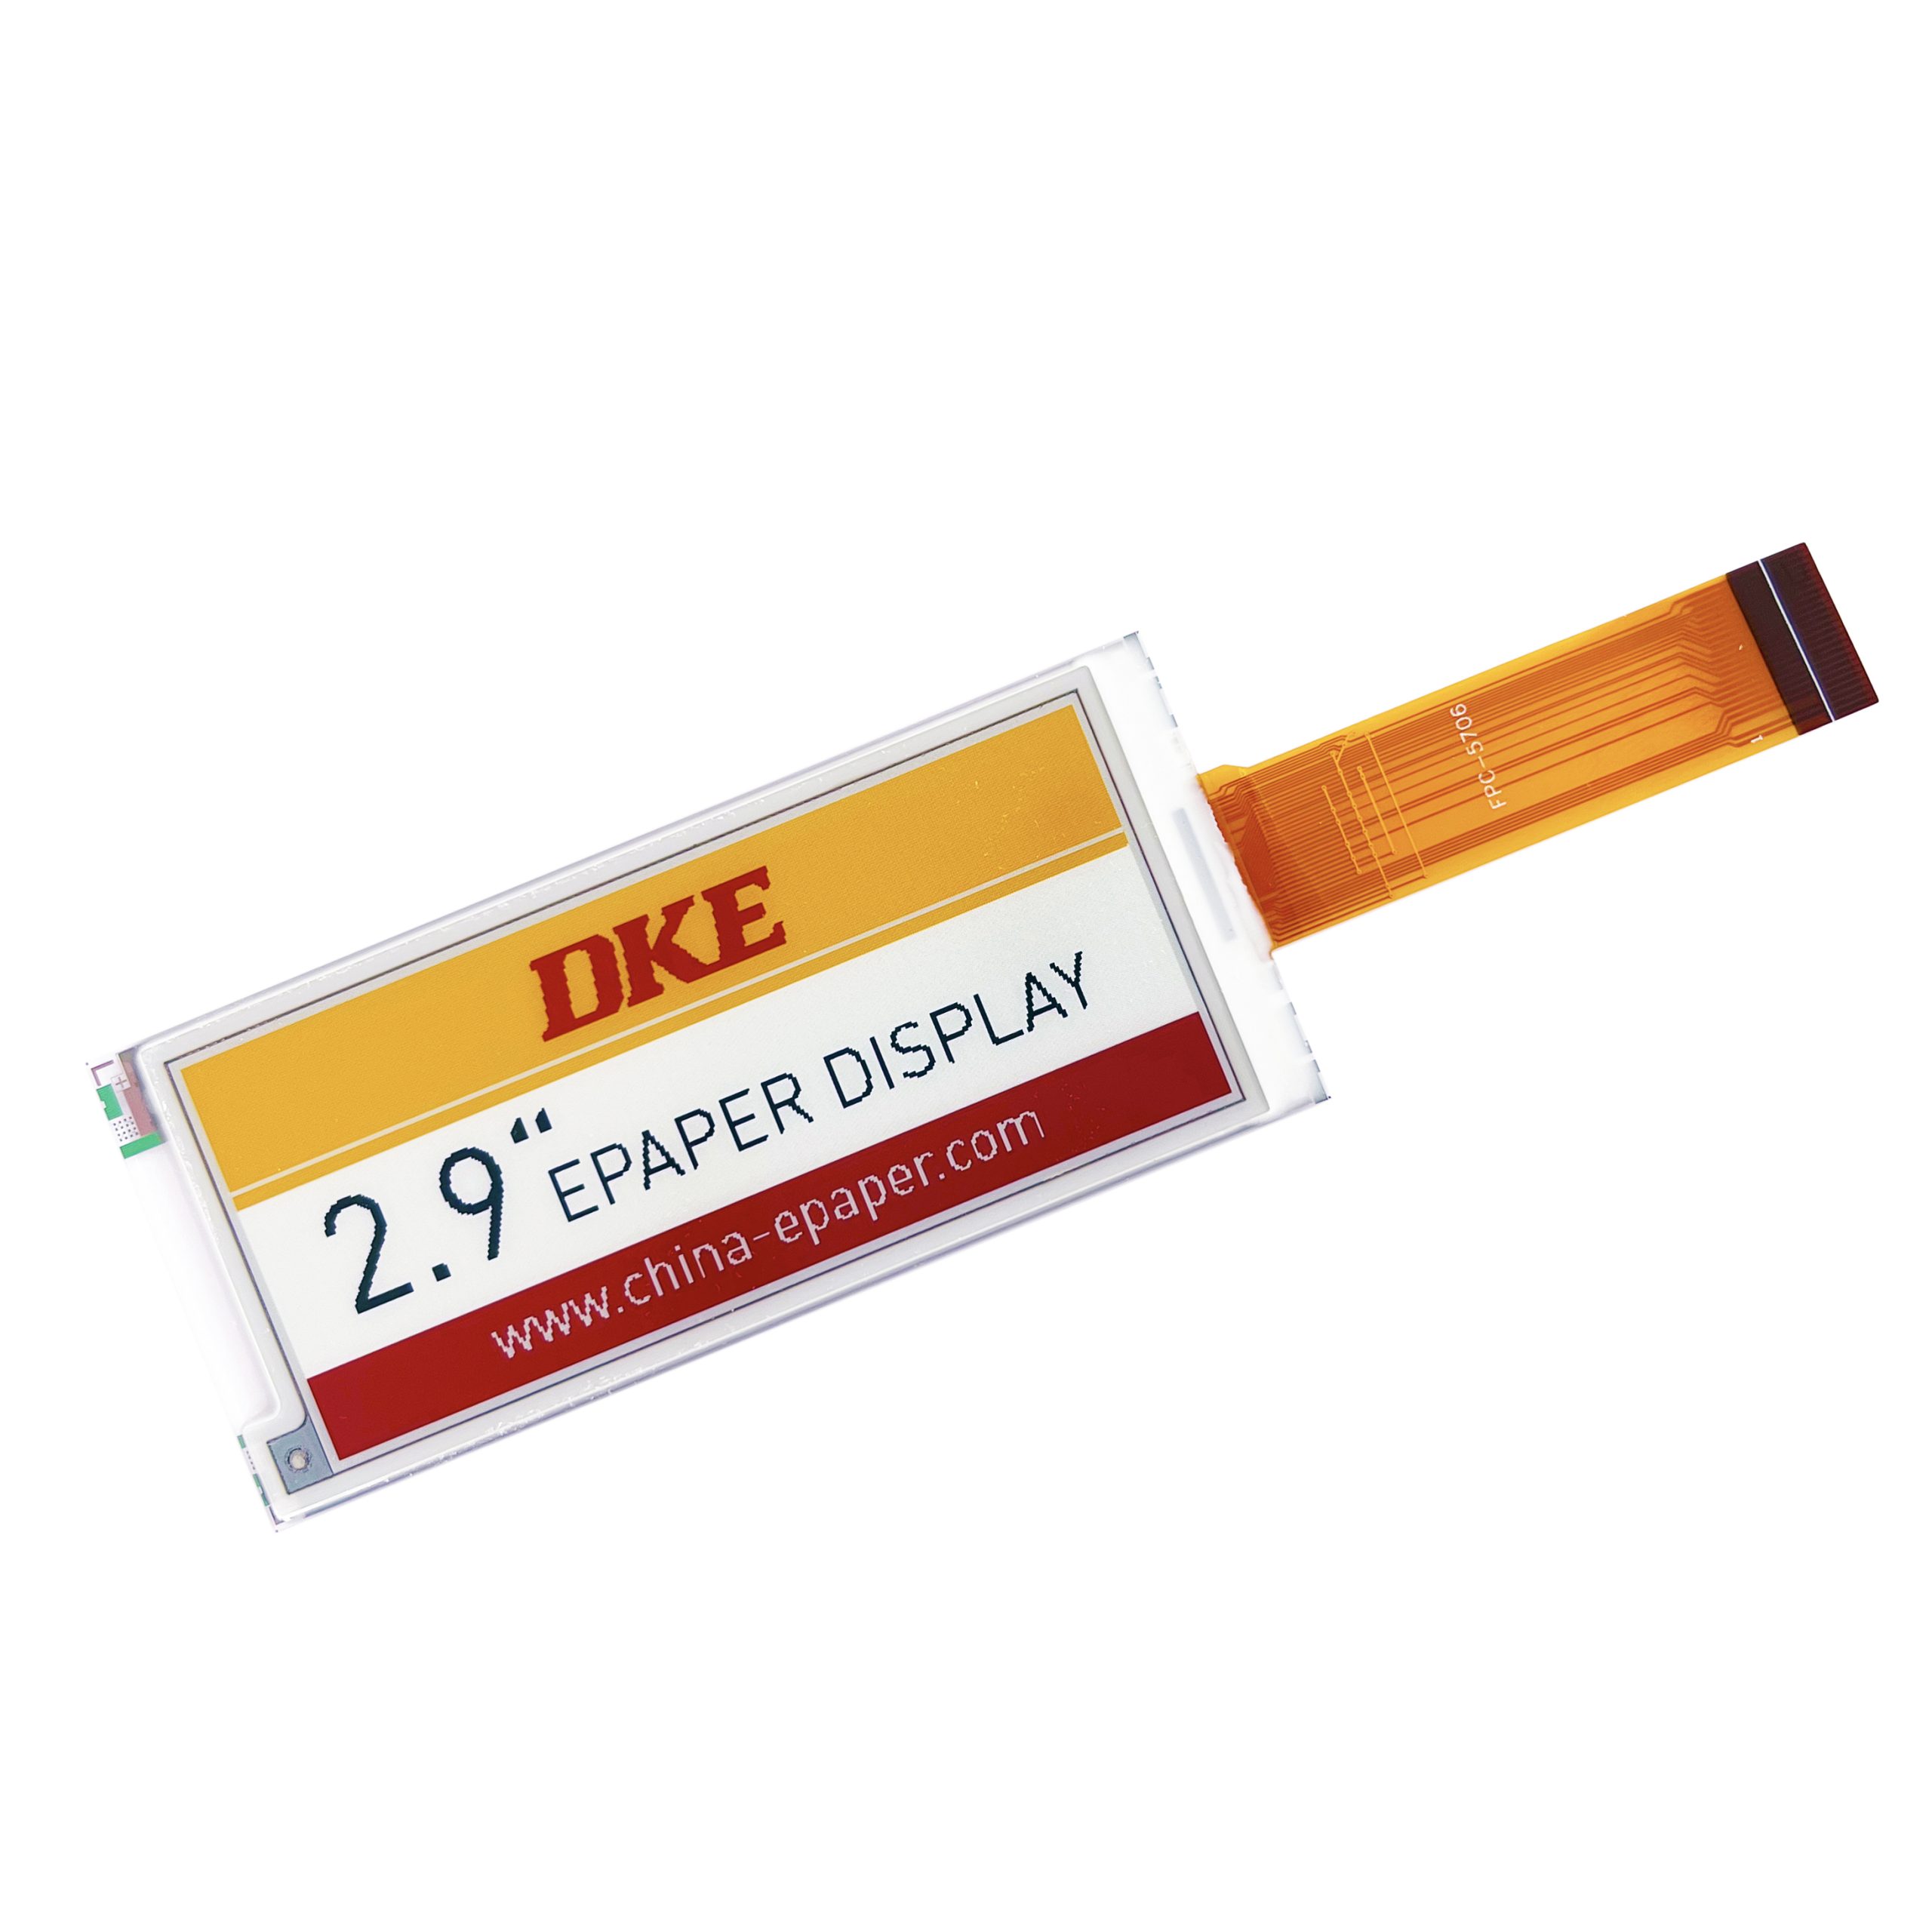 DKE 2.9 Inch Epaper Display-E5